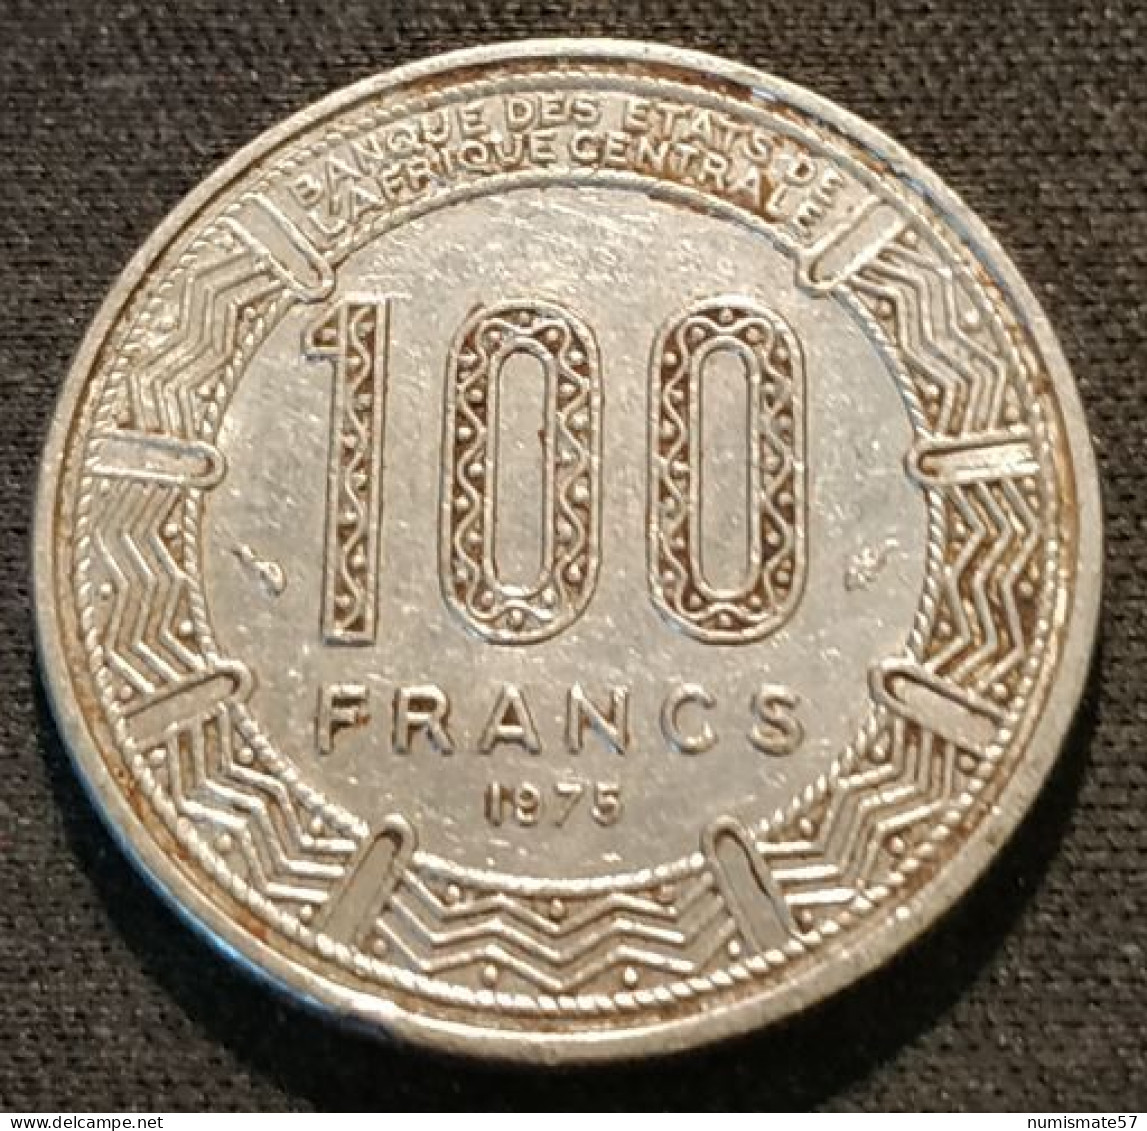 CAMEROUN - 100 FRANCS 1975 - KM 17 - Cameroon